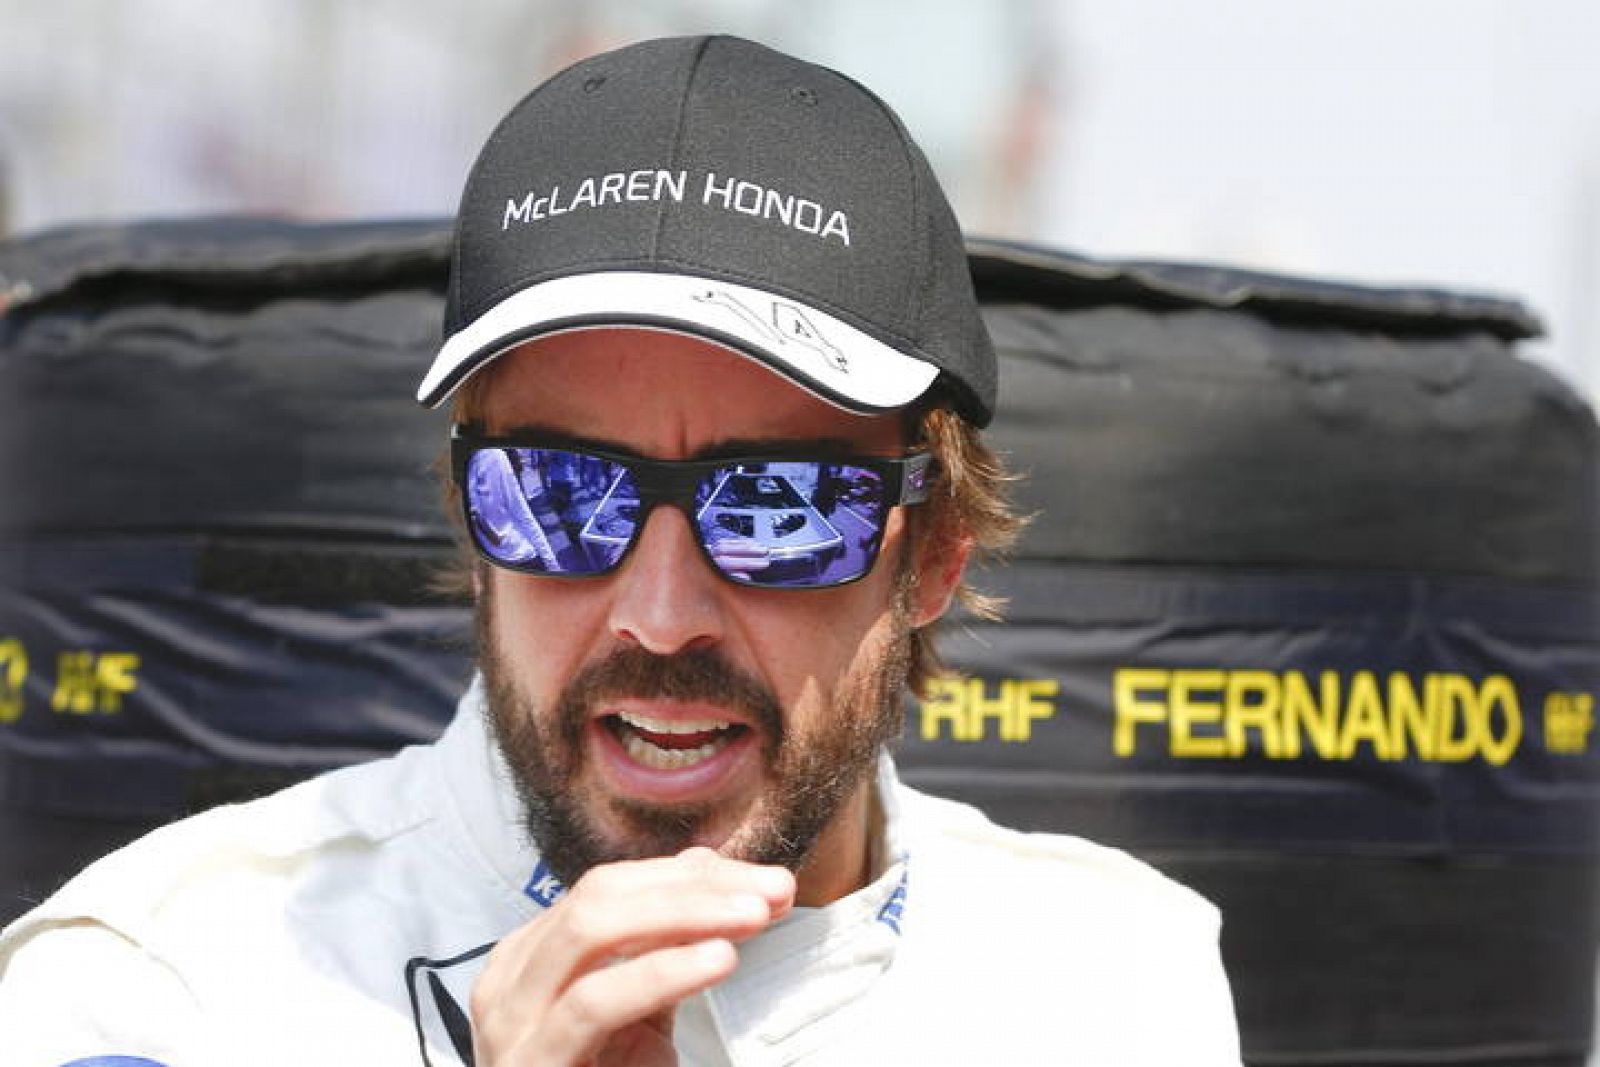 Fórmula 1 | Fernando Alonso | Alonso: "No a luchar por la victoria en Barcelona" -